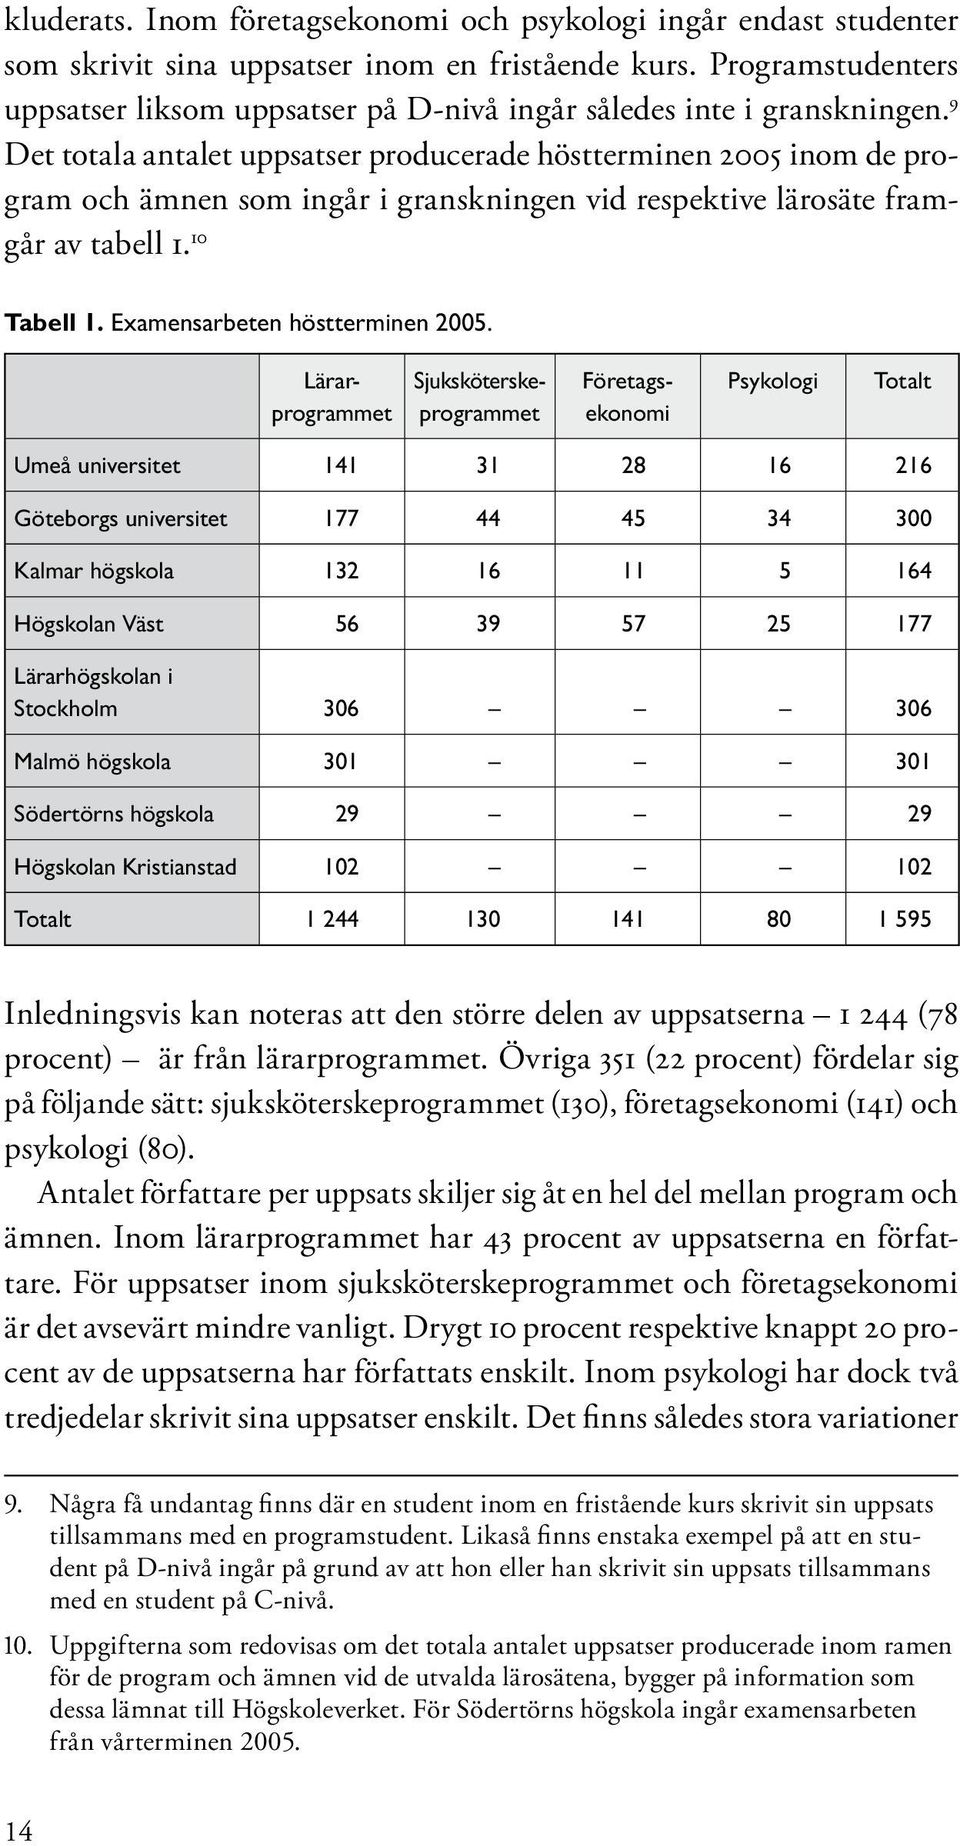 9 Det totala antalet uppsatser producerade höstterminen 2005 inom de program och ämnen som ingår i granskningen vid respektive lärosäte framgår av tabell 1. 10 Tabell 1.